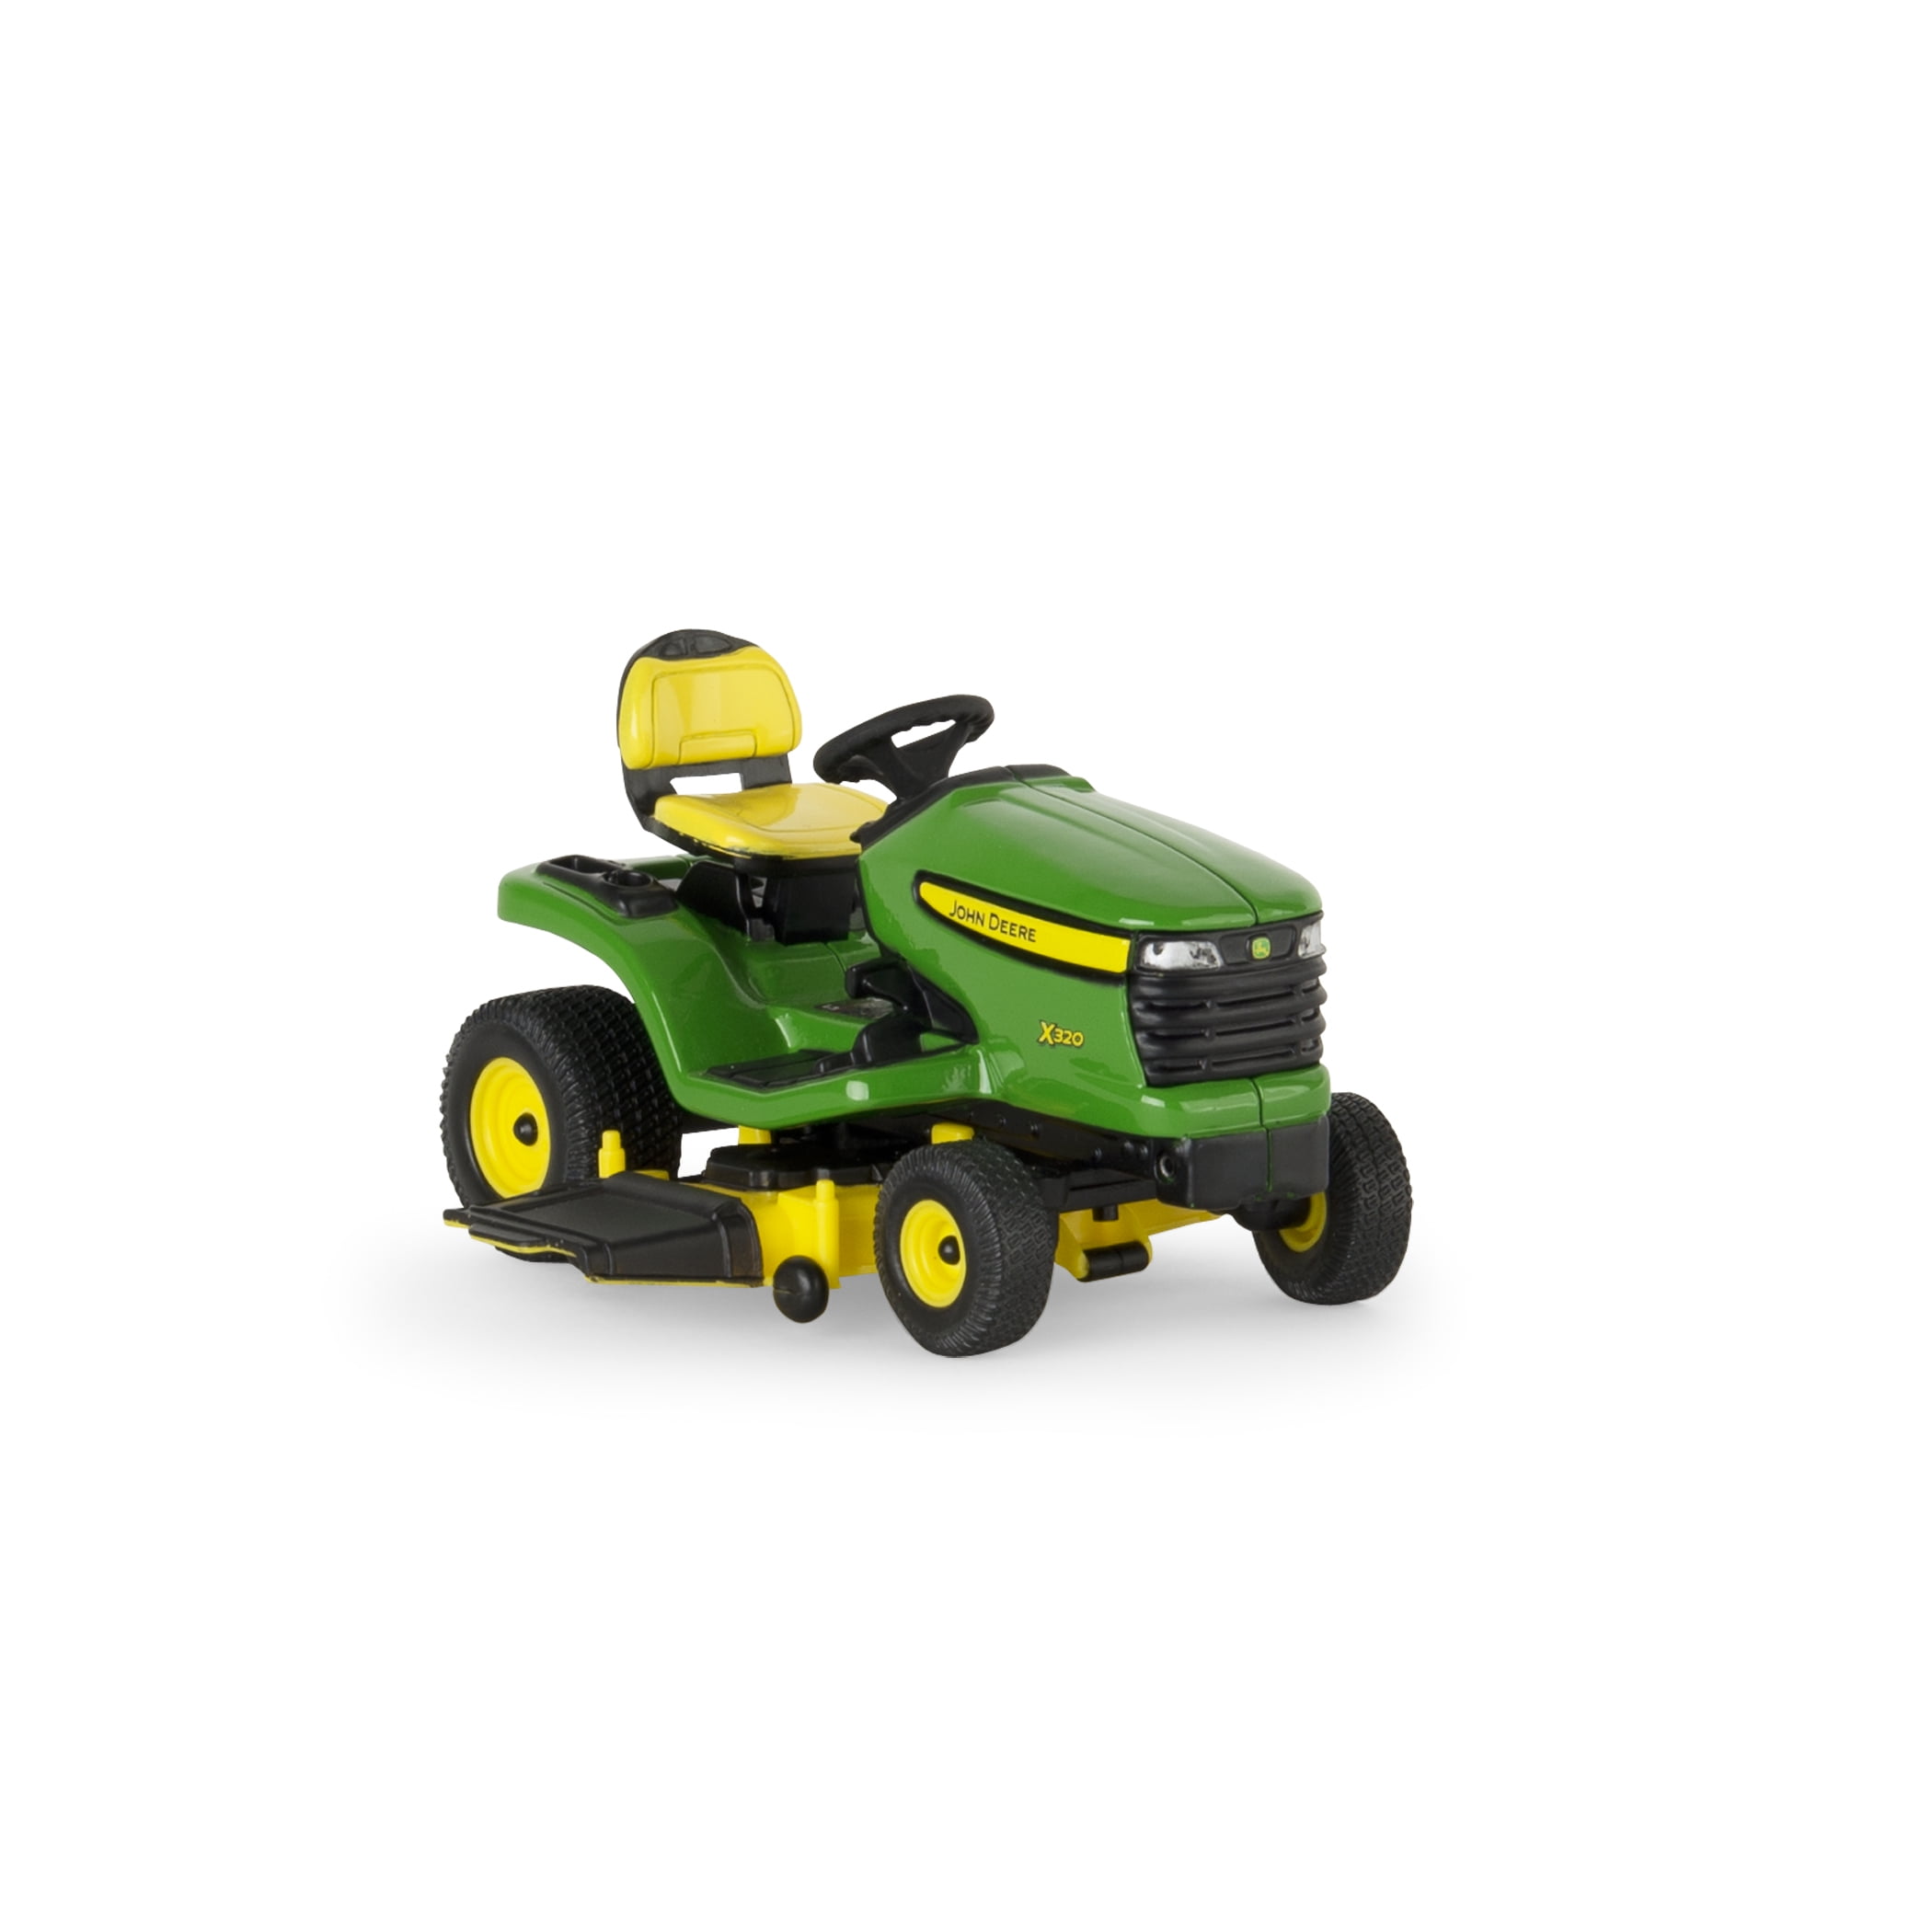 Bruder 62103 Scale 1:16 NEW RELEASE Lawnmower Tools & Gardener Figure 